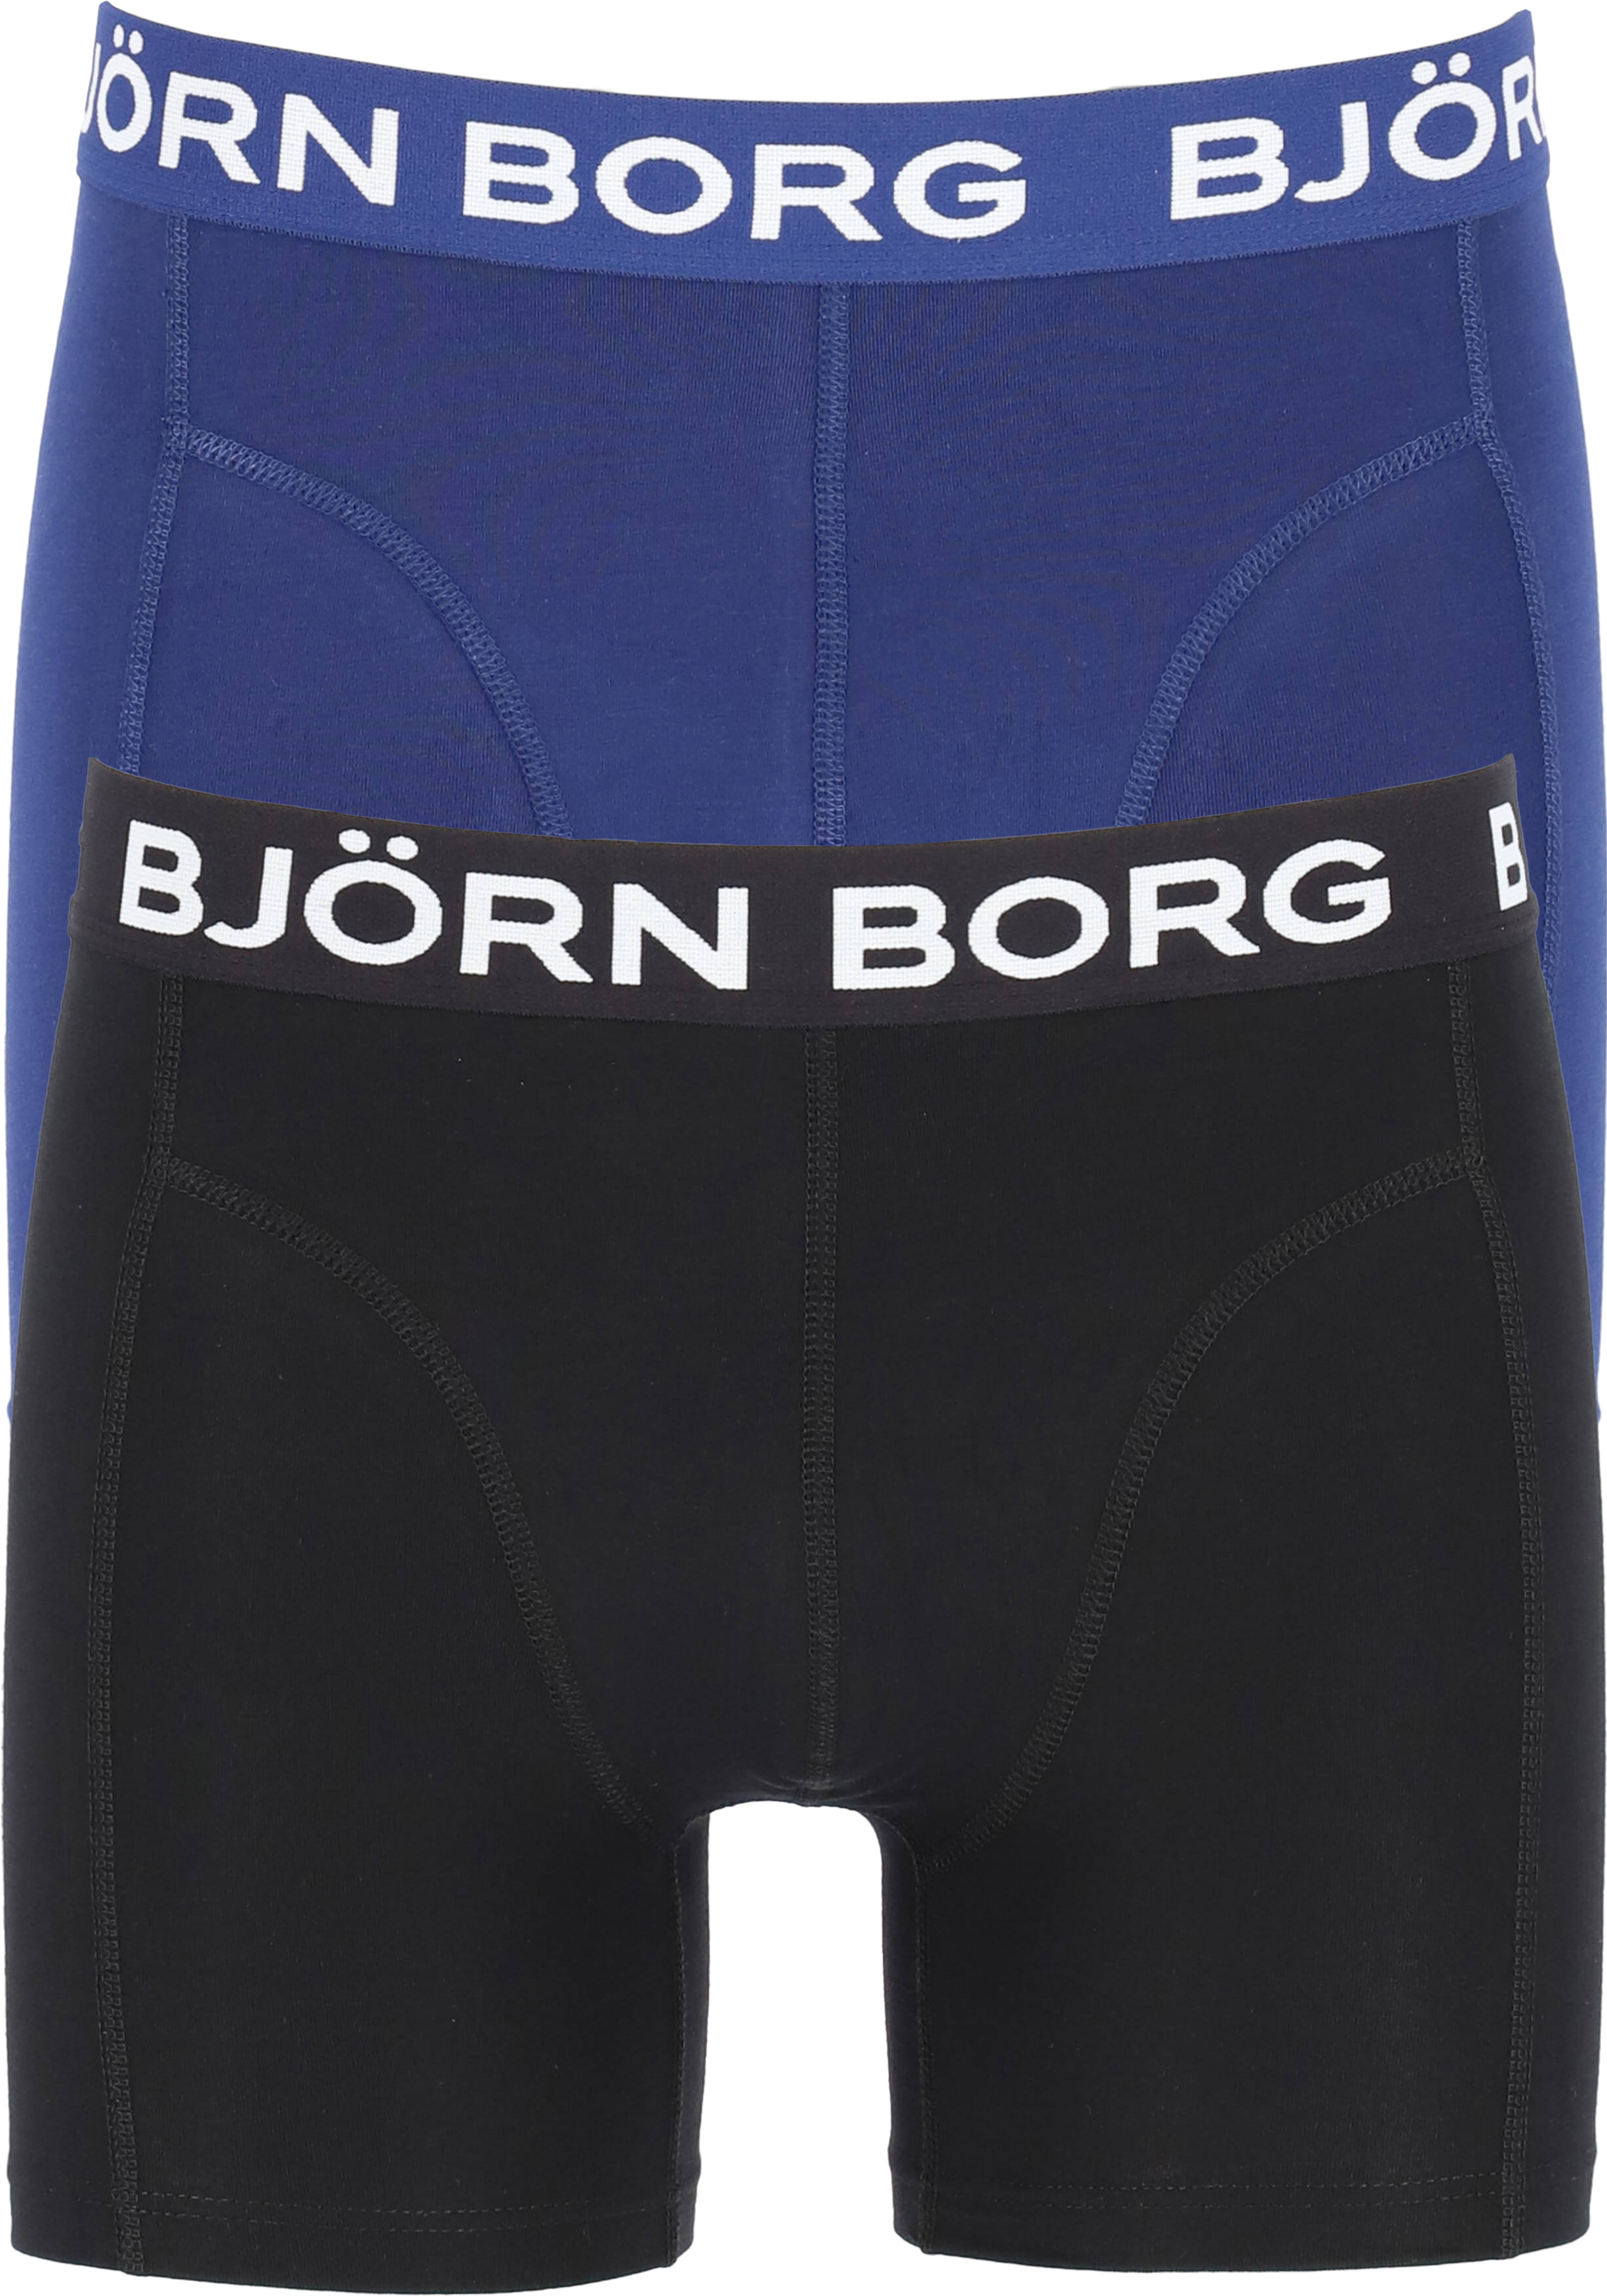 dienen wijsvinger stoom Bjorn Borg boxershorts Core (2-pack), heren boxers normale lengte, zwart...  - SALE tot 70% korting